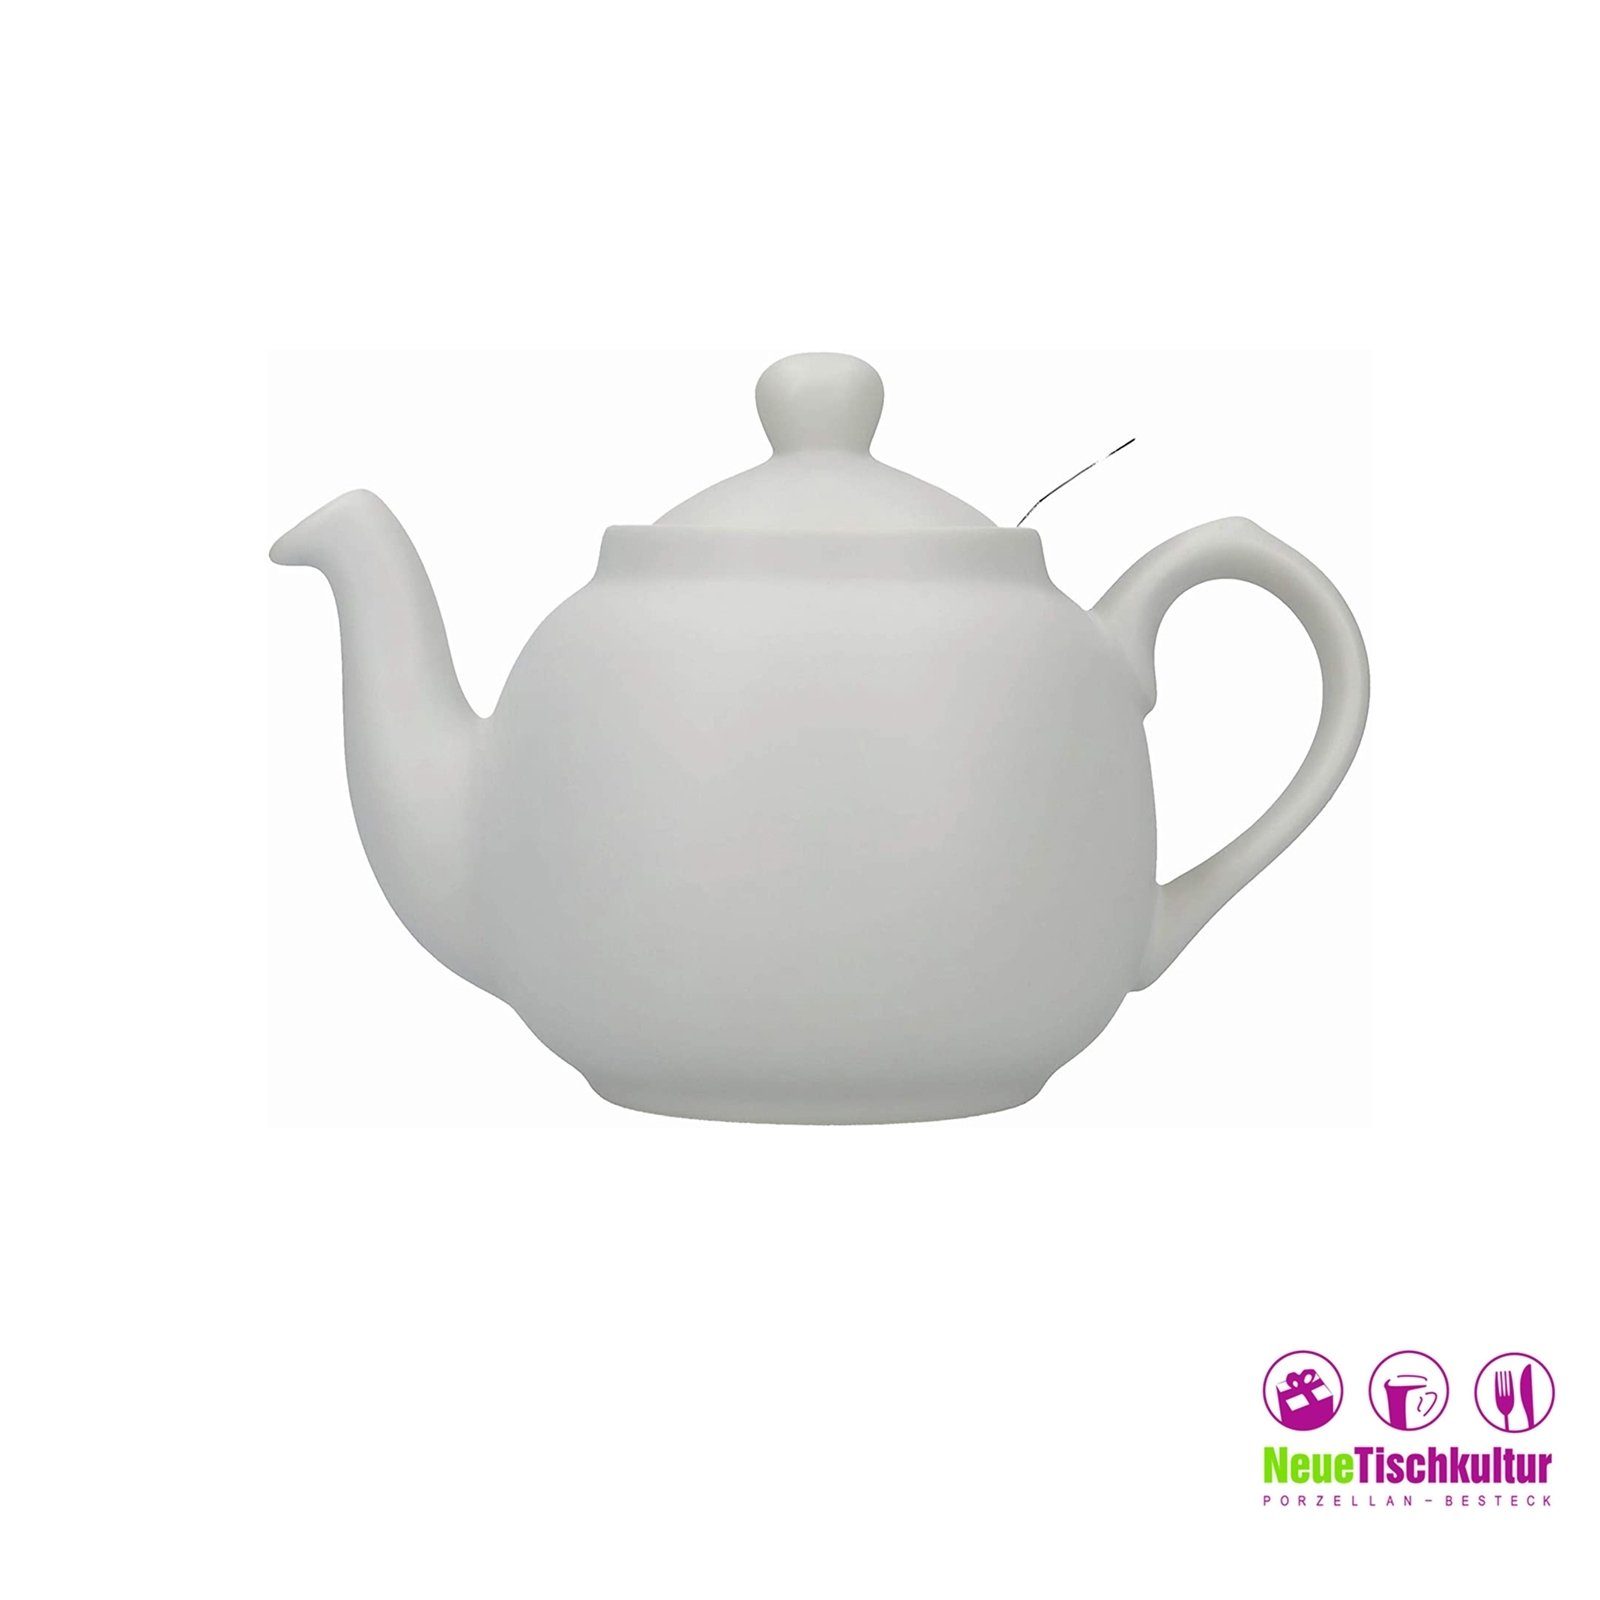 Neuetischkultur Teekanne Teekanne 2 Tassen, Grau l Keramik, für Nordisch 0.6